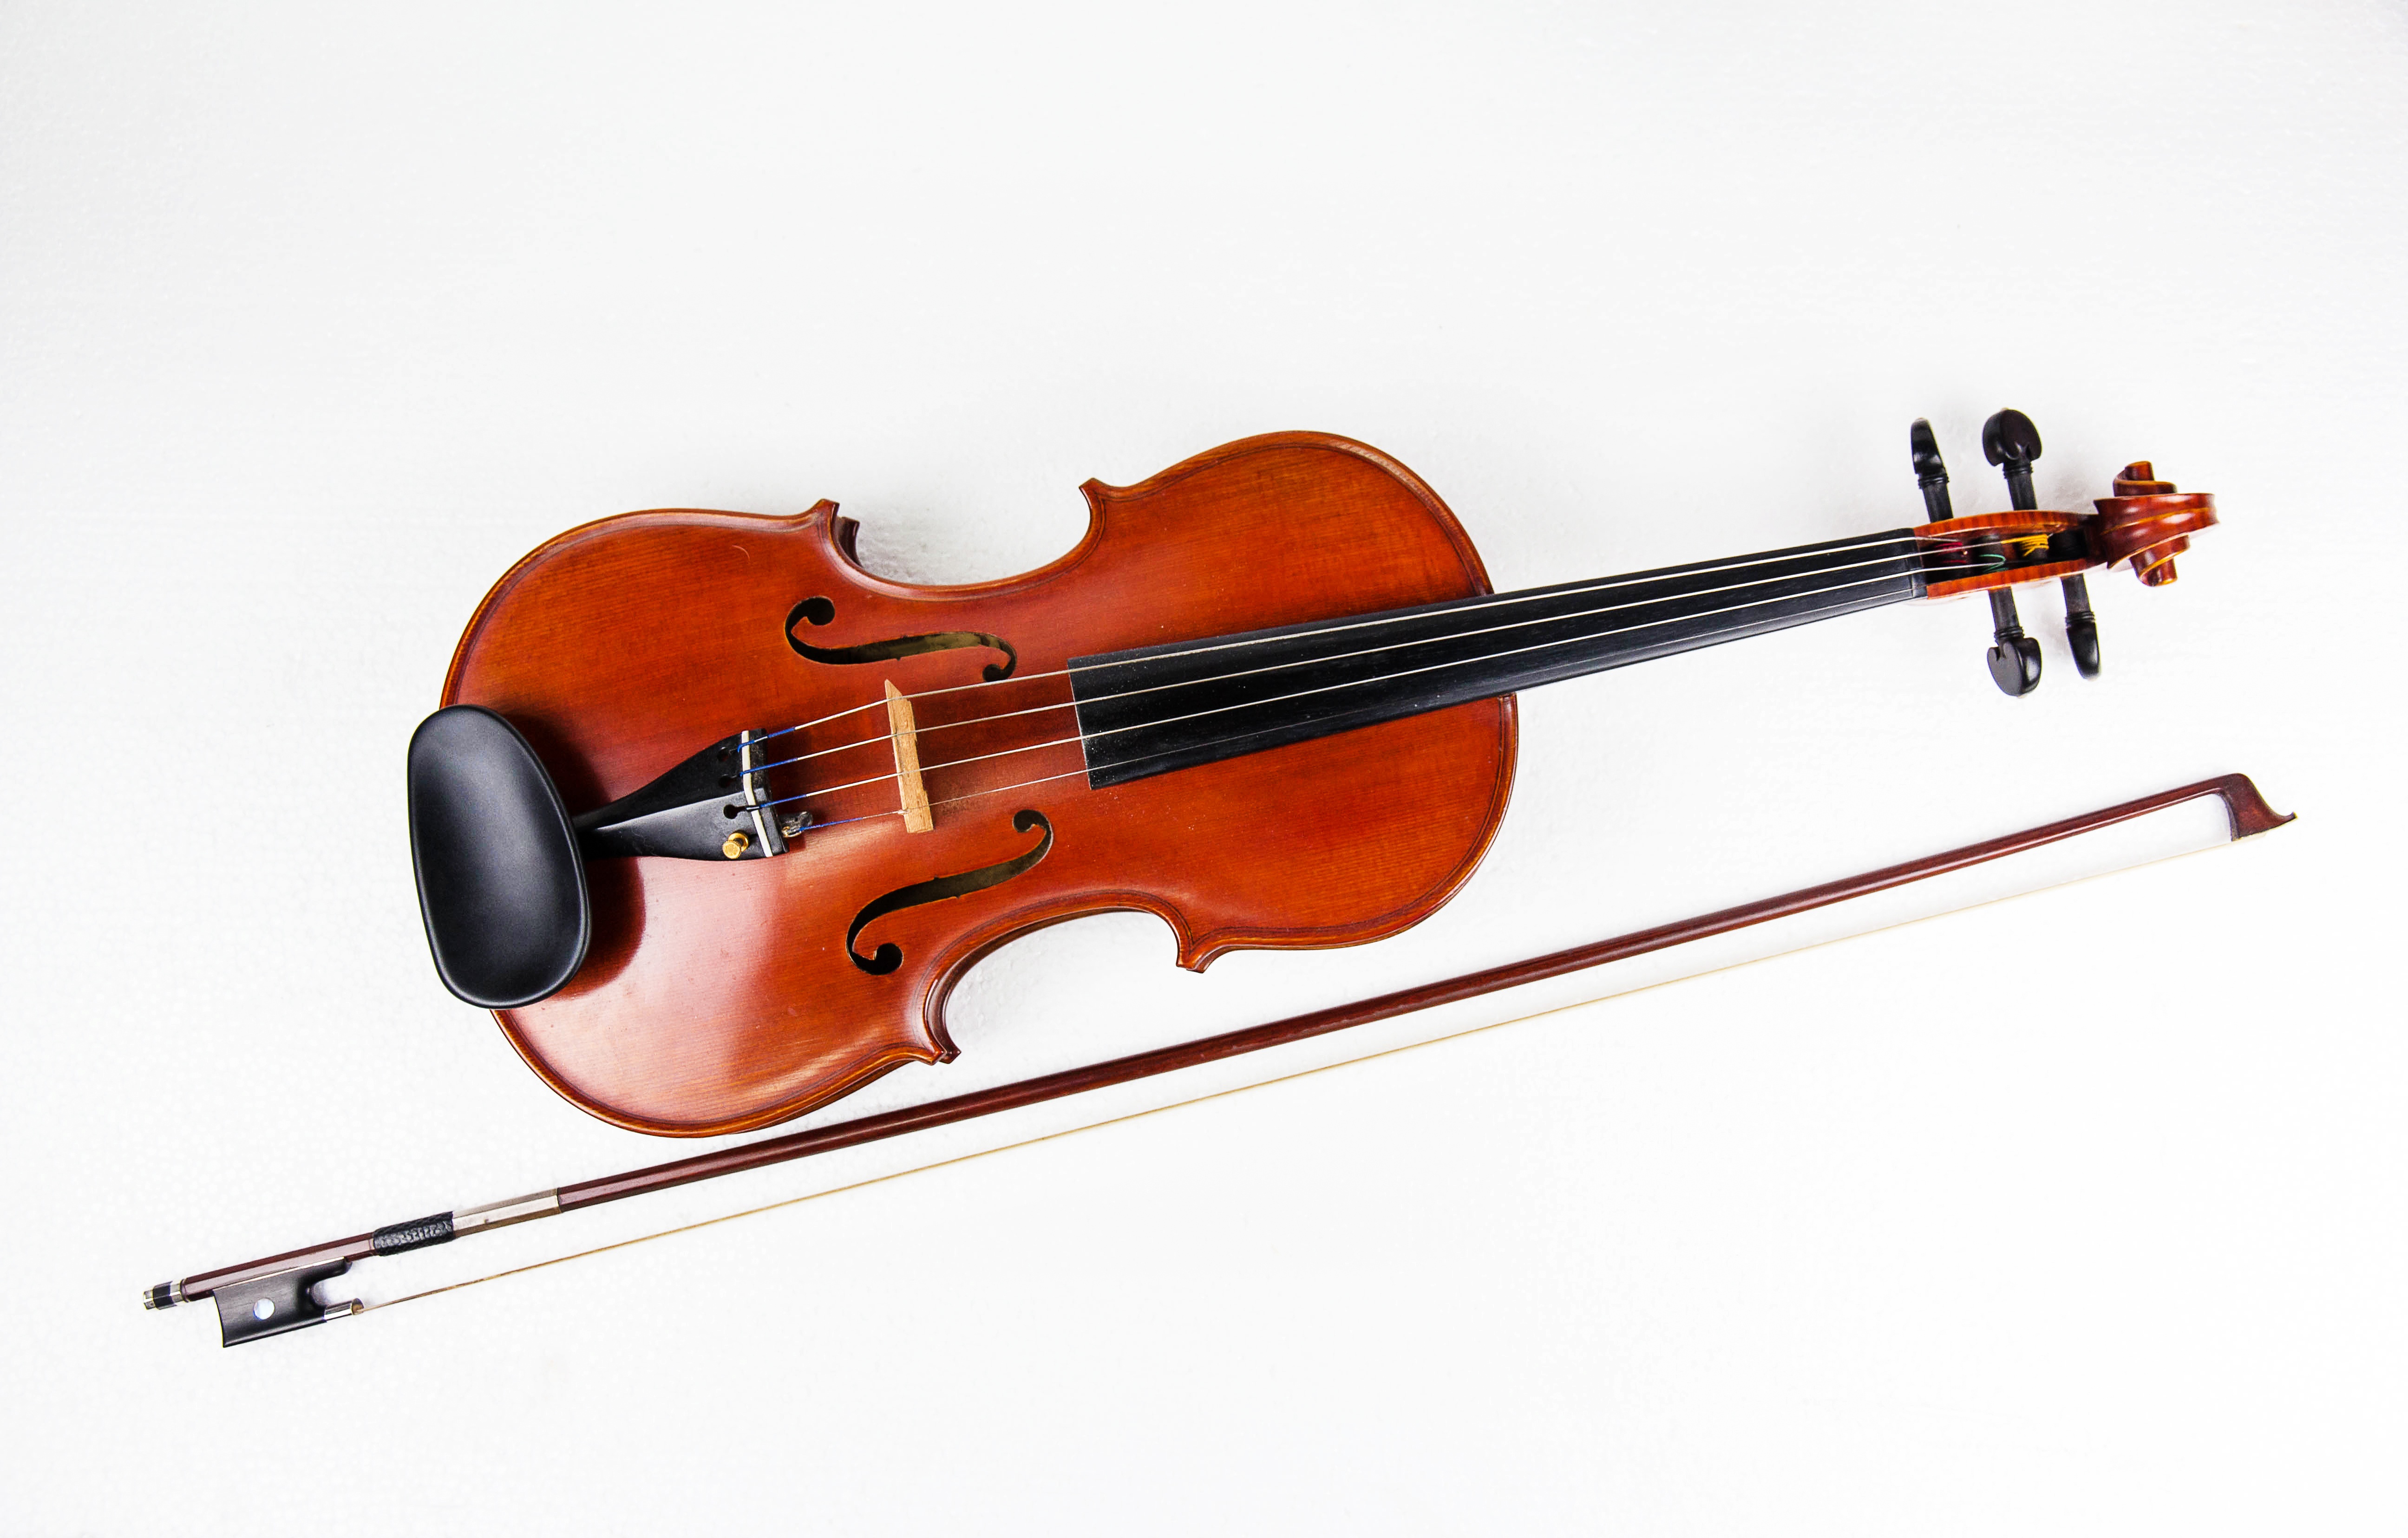 Quels sont les éléments qui composent un violon ?